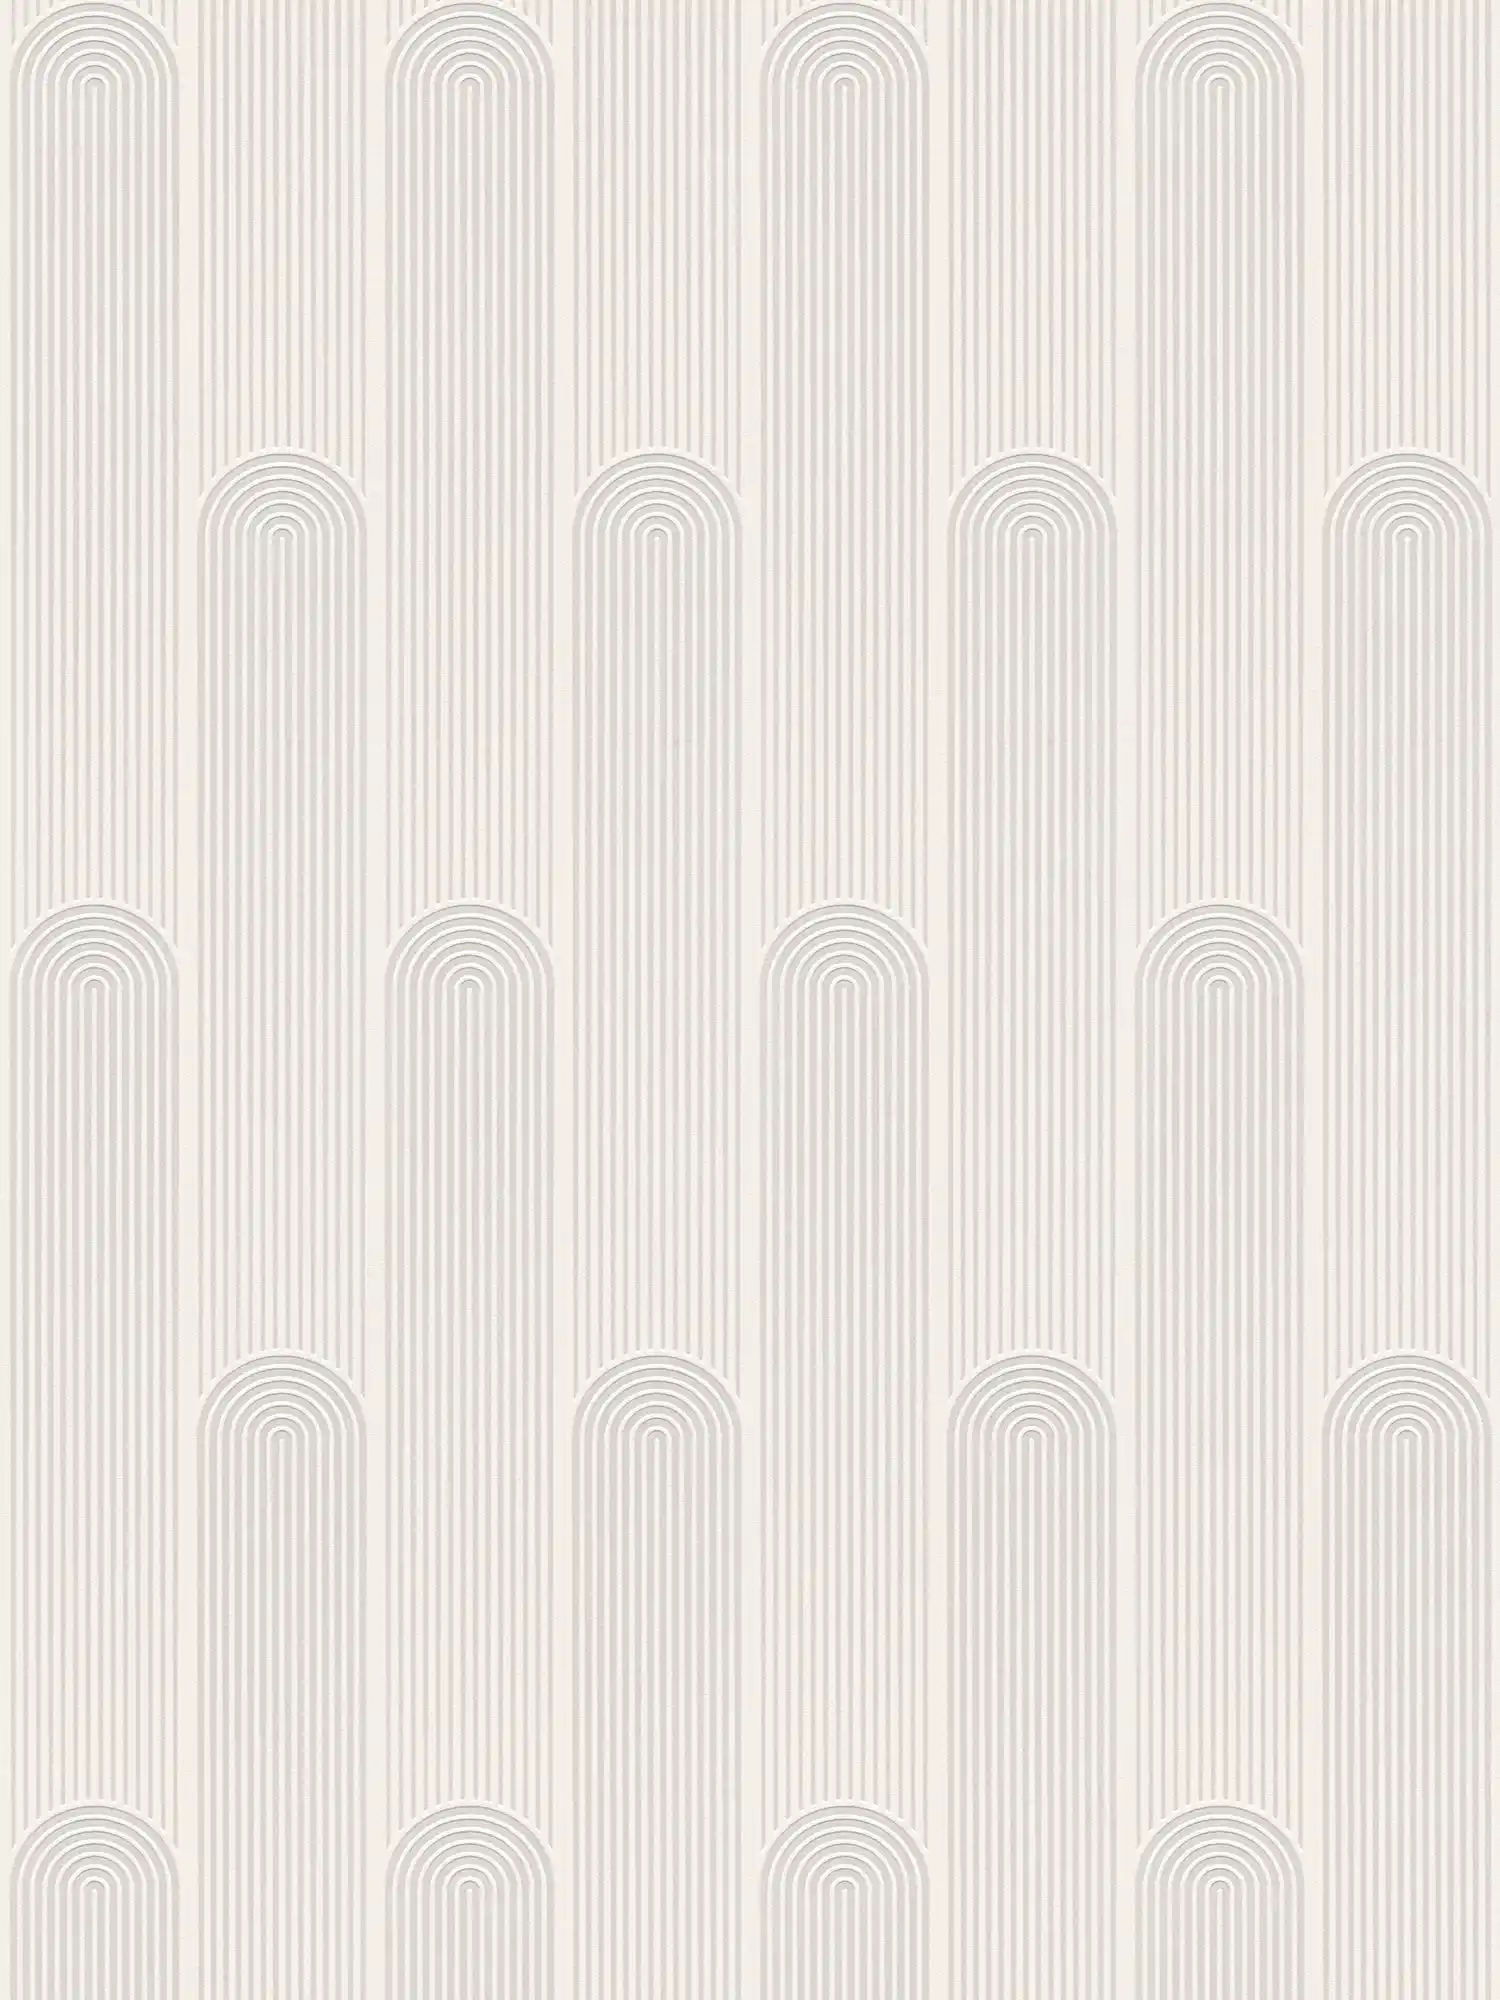 Patroonbehang retro art deco lijnen ontwerp - wit, grijs
